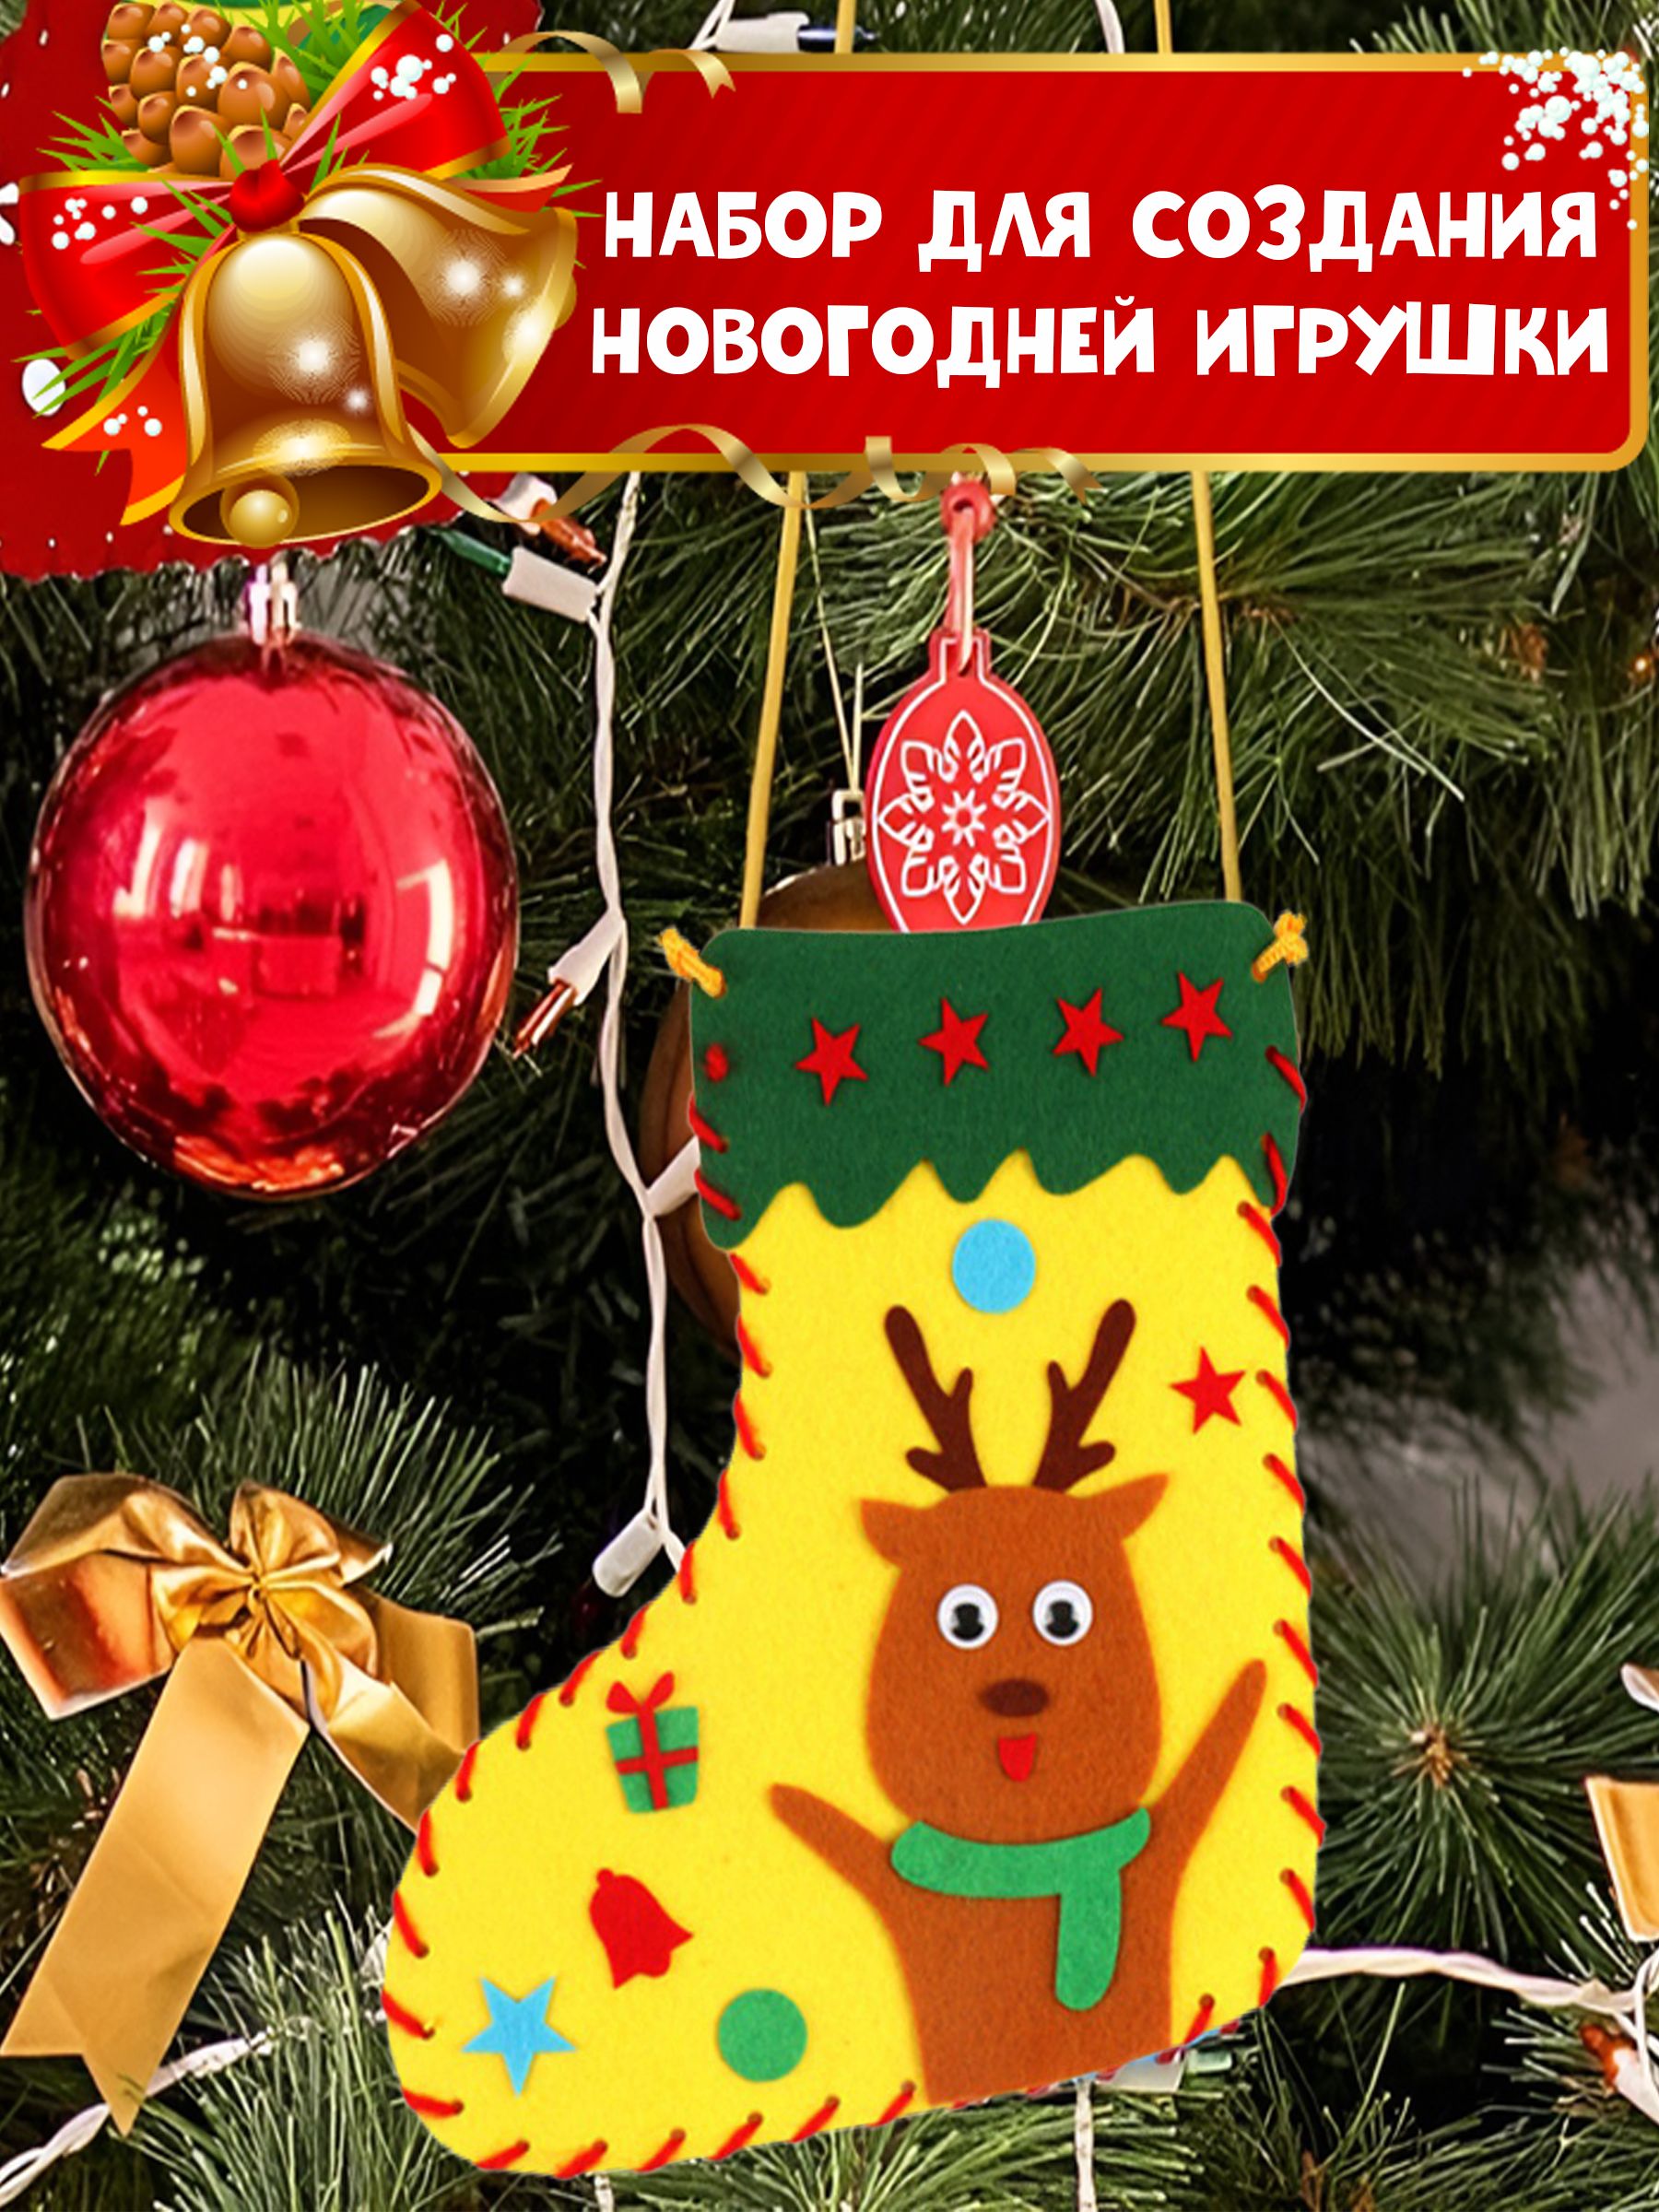 В красноярском детском саду установили огромную елку из мягких игрушек